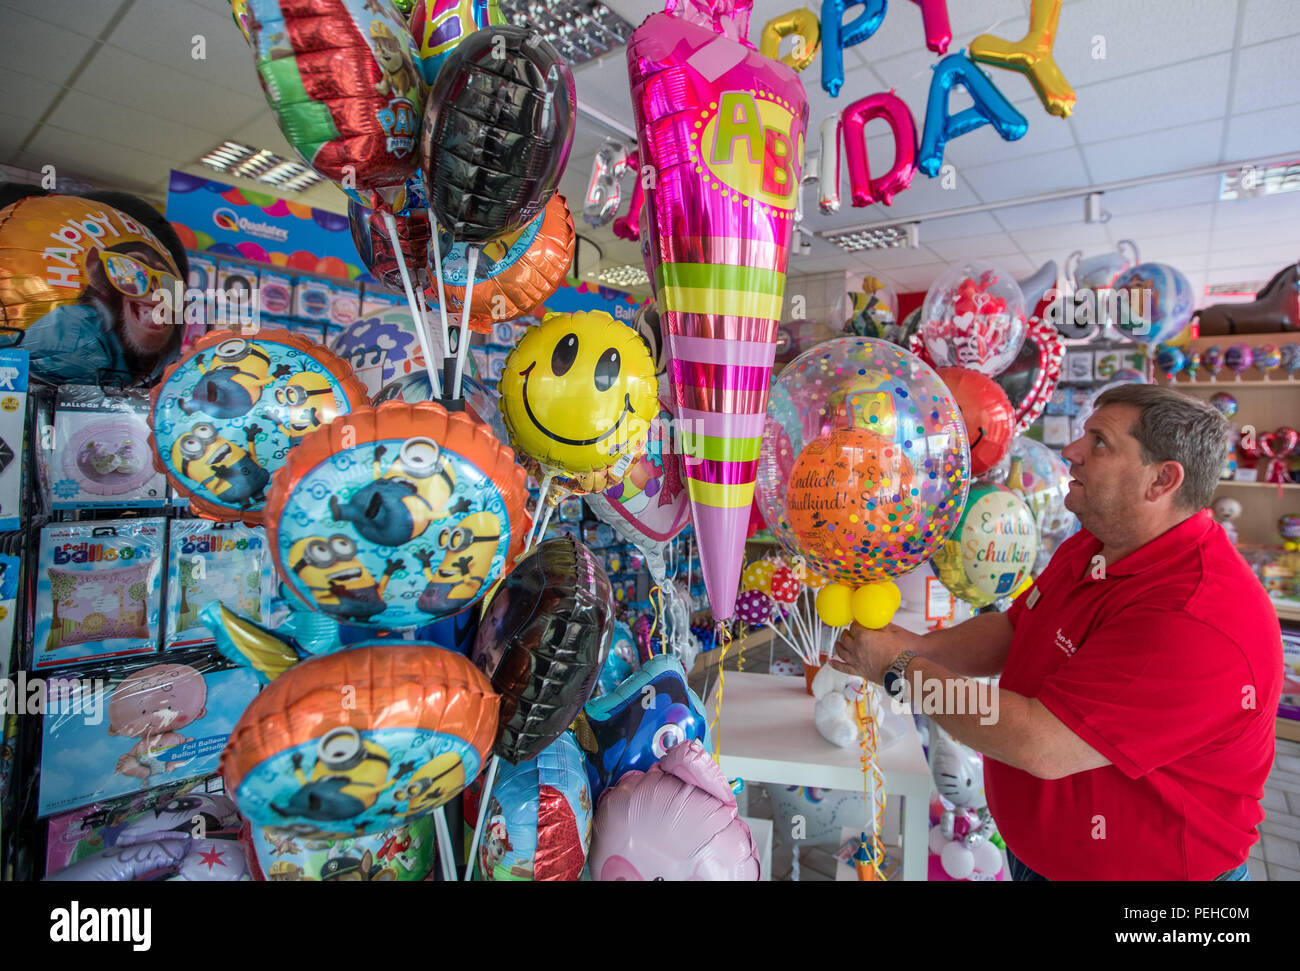 Zeulenroda, Deutschland. 14 Aug, 2018. Inhaber Sven Mlejnek sortiert  verschiedene Ballons in seinem Fachgeschäft "Ballon-Paradies'. In dieser  einzigartigen Shop in Thüringen können Sie aus mehr als 2.000 verschiedenen  Ballons wählen. Auf Wunsch